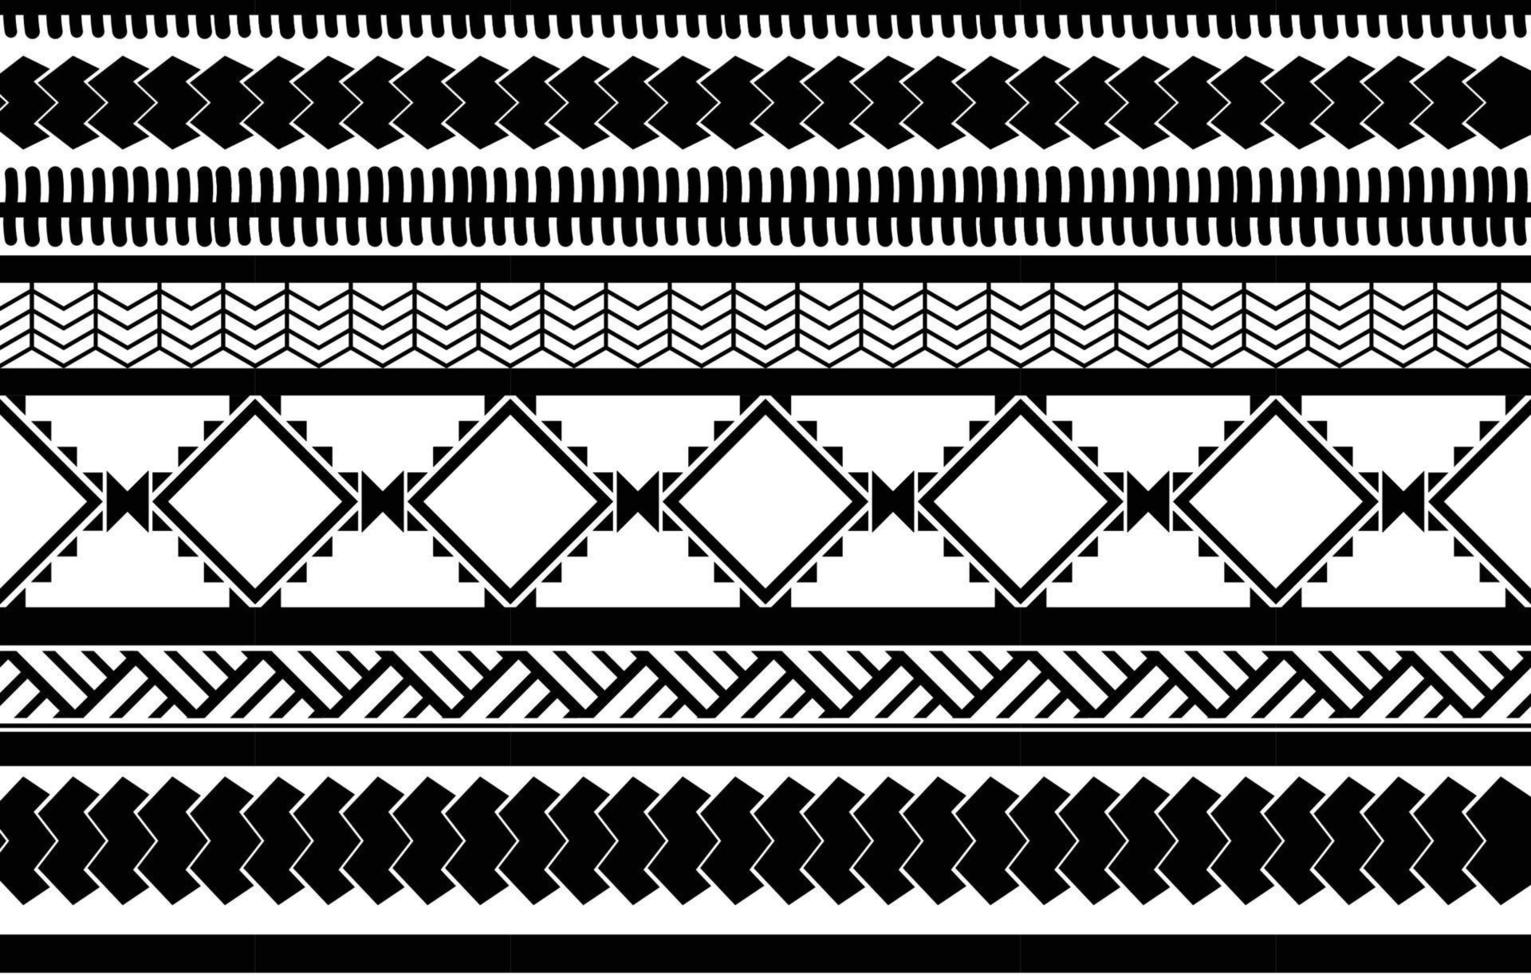 motivo geometrico etnico astratto bianco e nero tribale africano. design per sfondo o carta da parati.illustrazione vettoriale per stampare modelli di tessuto, tappeti, camicie, costumi, turbante, cappelli, tende.